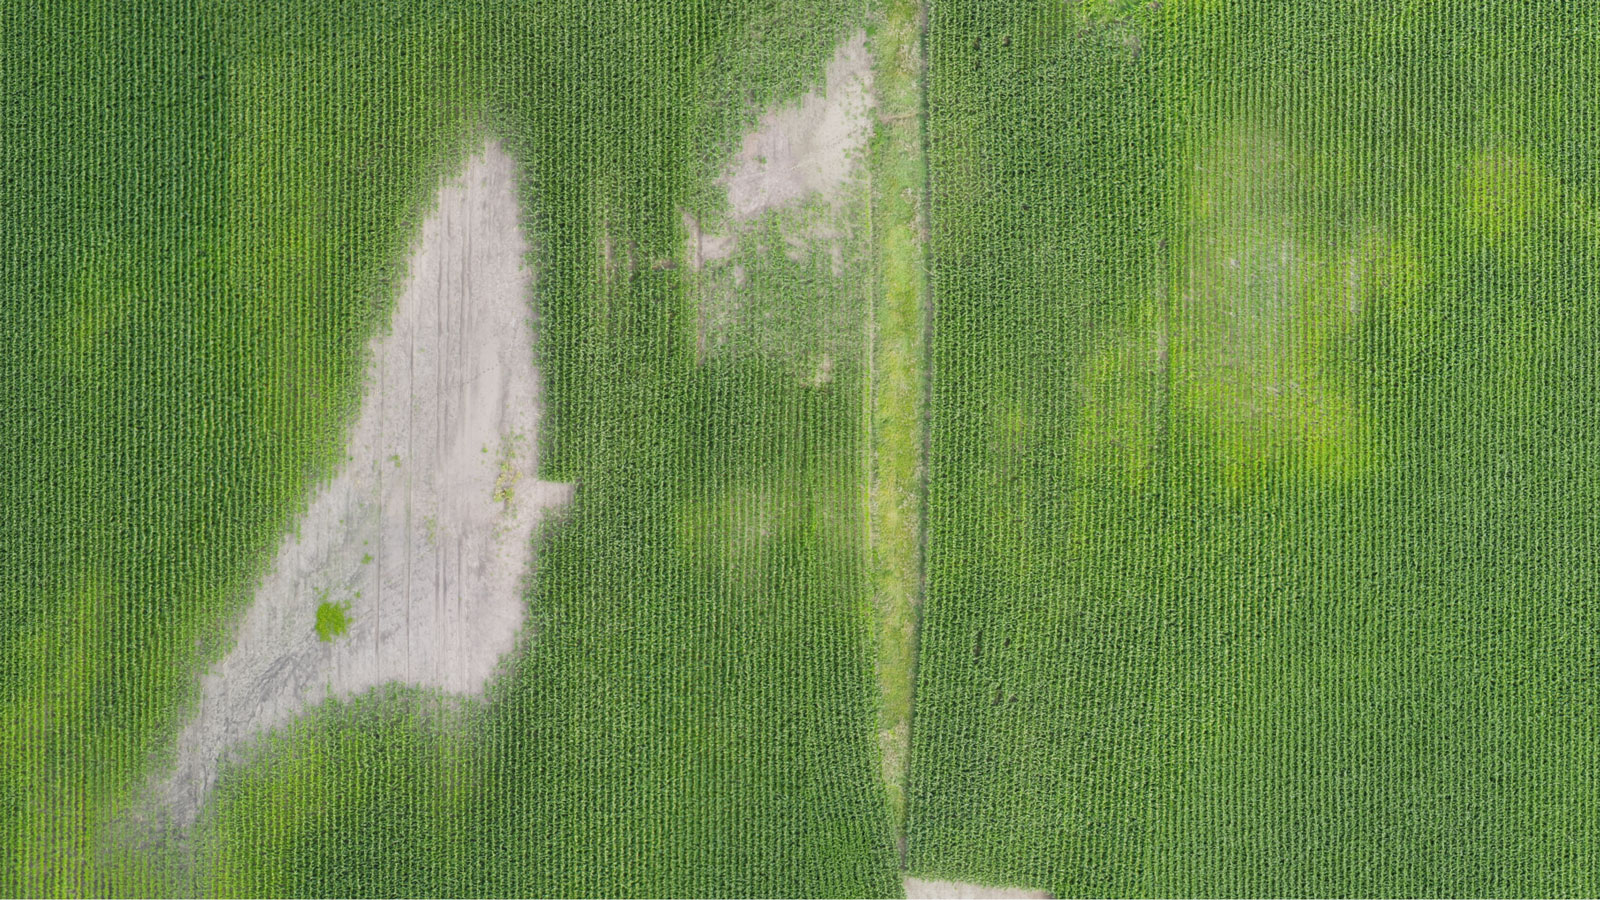 Output ortomosaico per la mappatura agricola usando un drone agricolo